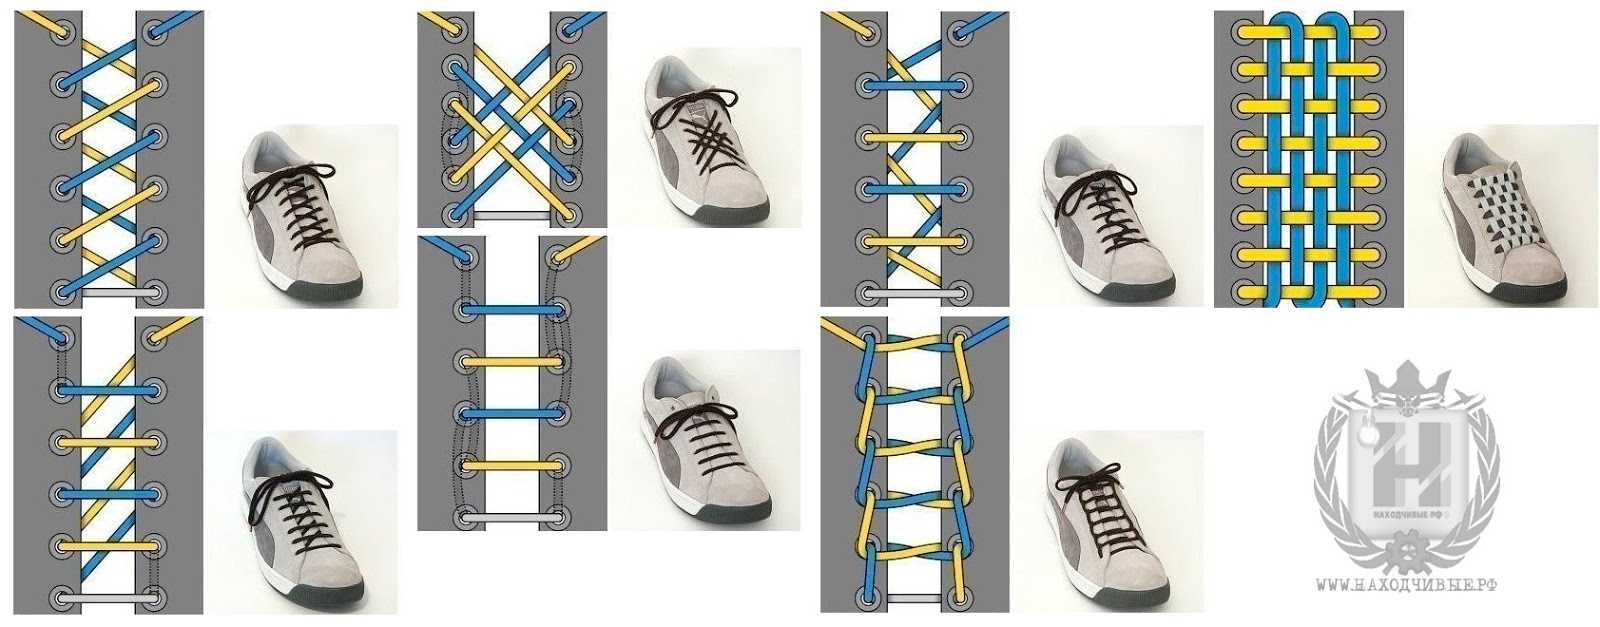 Убираем мешающие шнурки и удобно зашнуровываем кроссовки для плодотворной тренировки